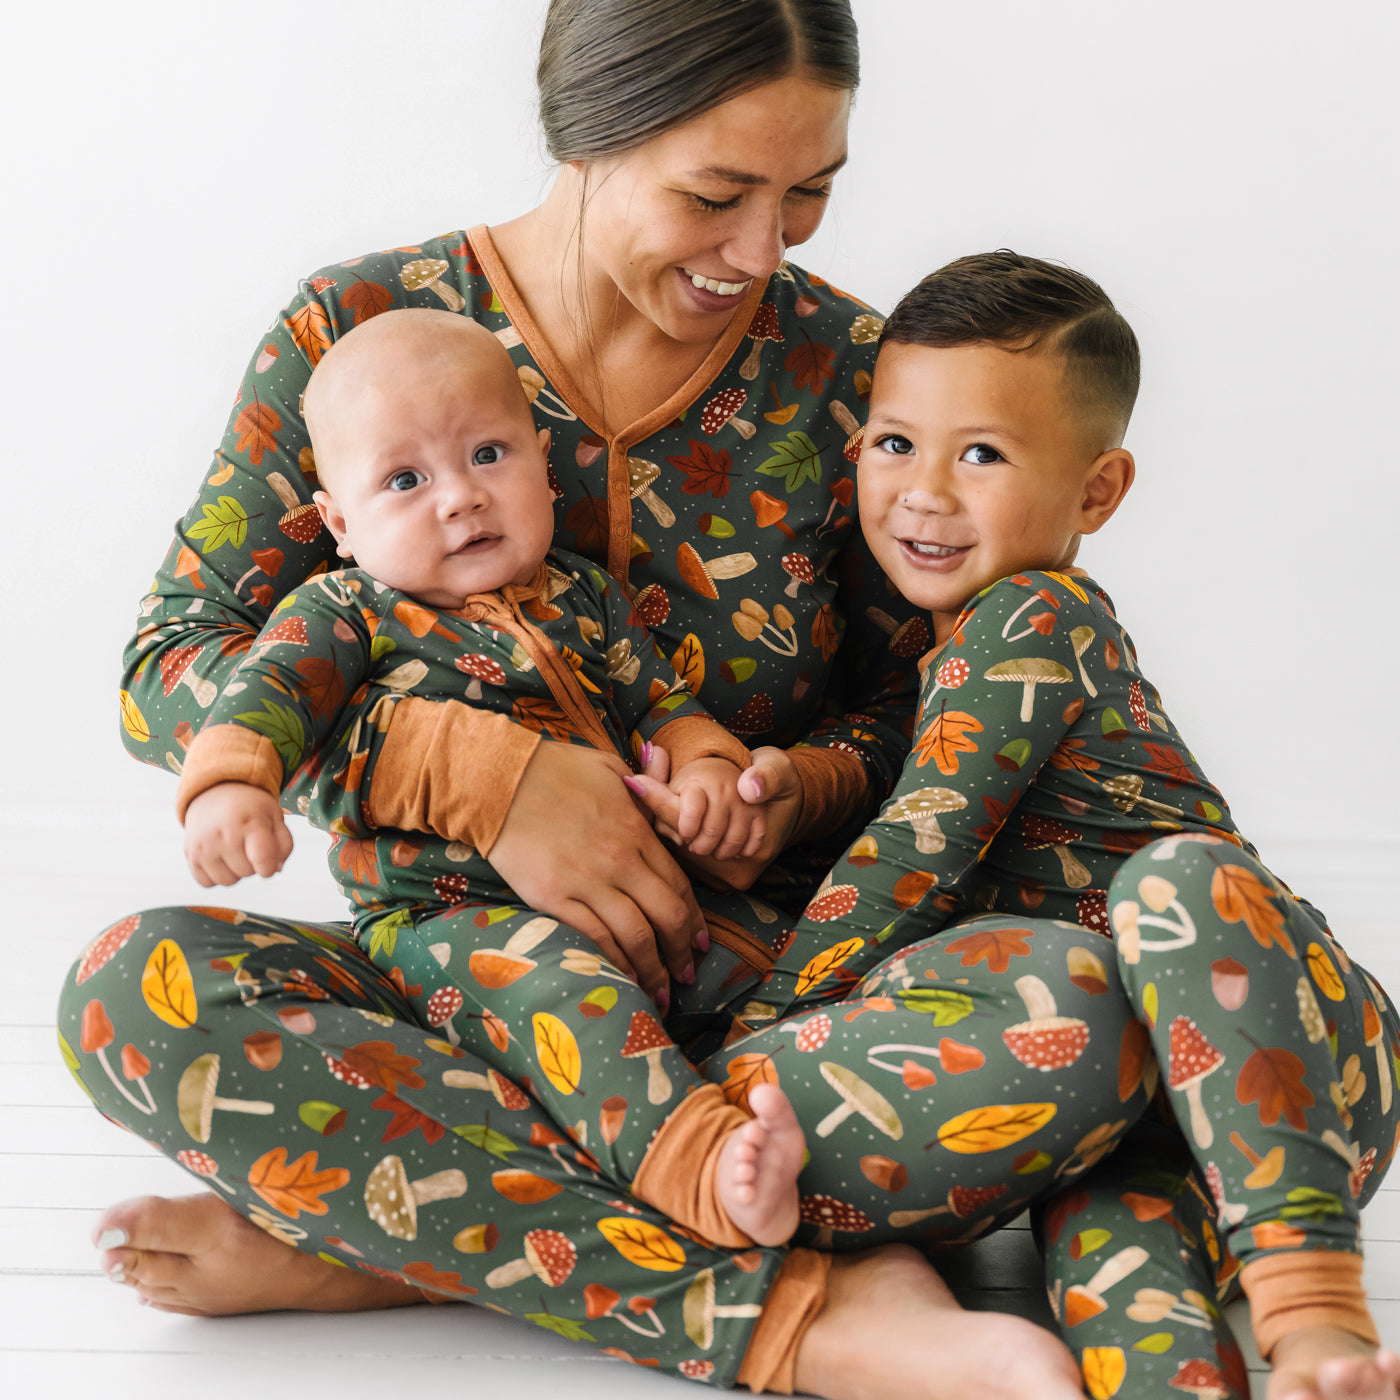 Woodland Winter Appliqué Kids 2-Piece Pajama Set 